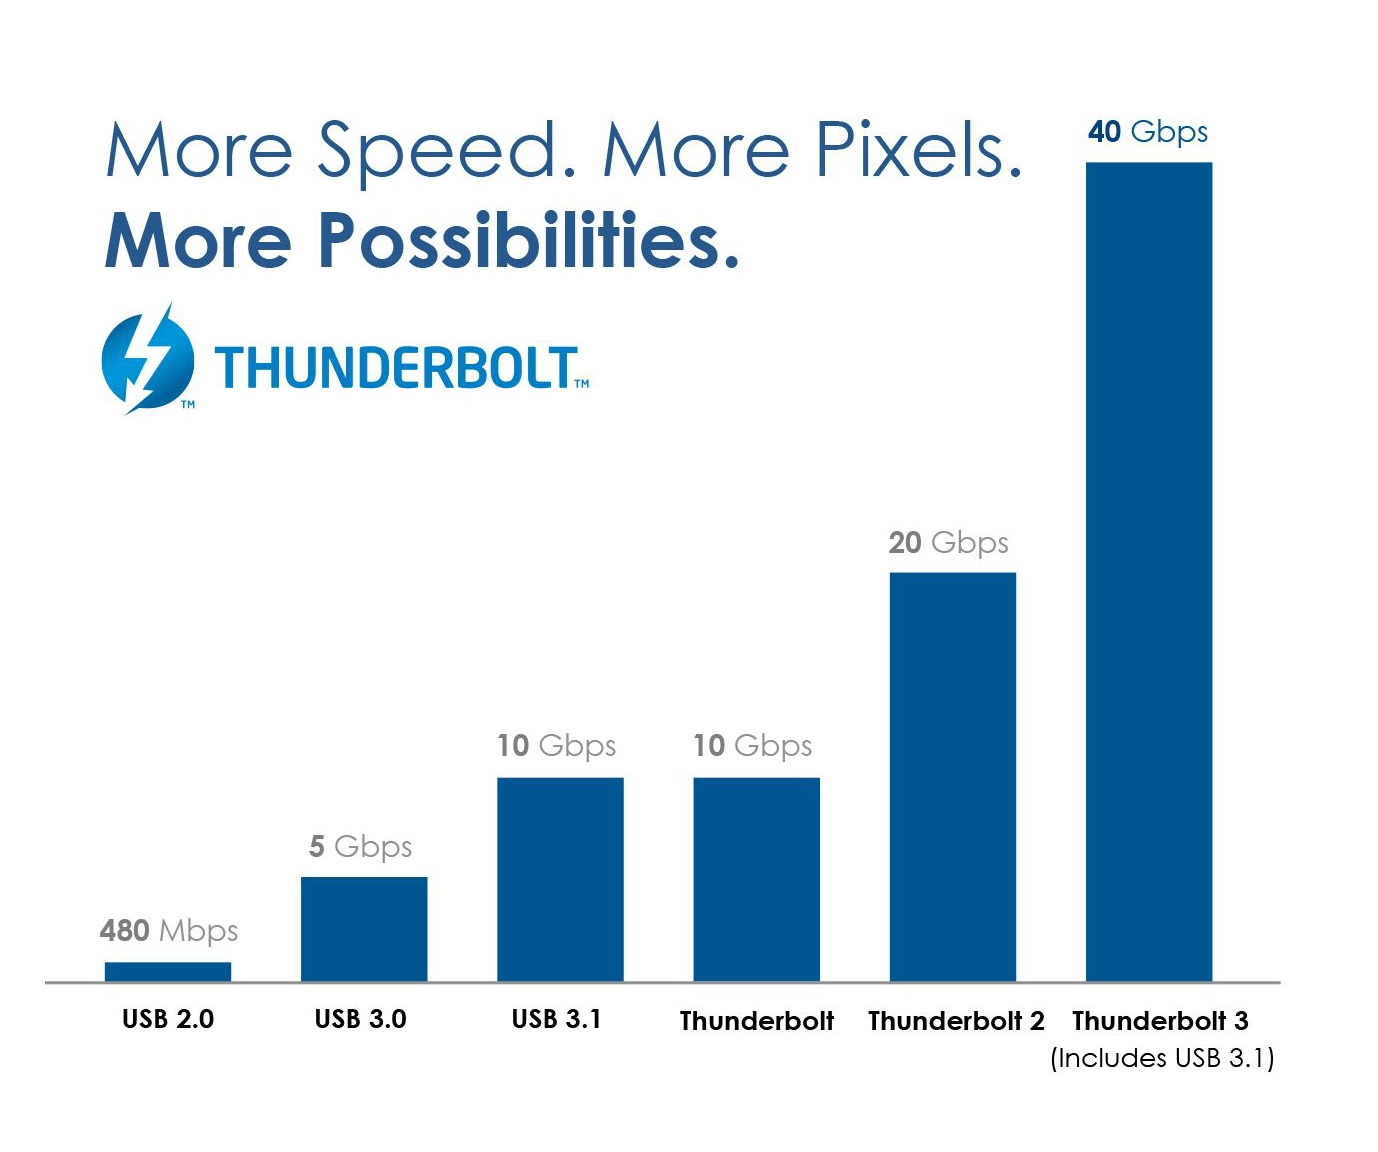 Thunderbolt™ 3